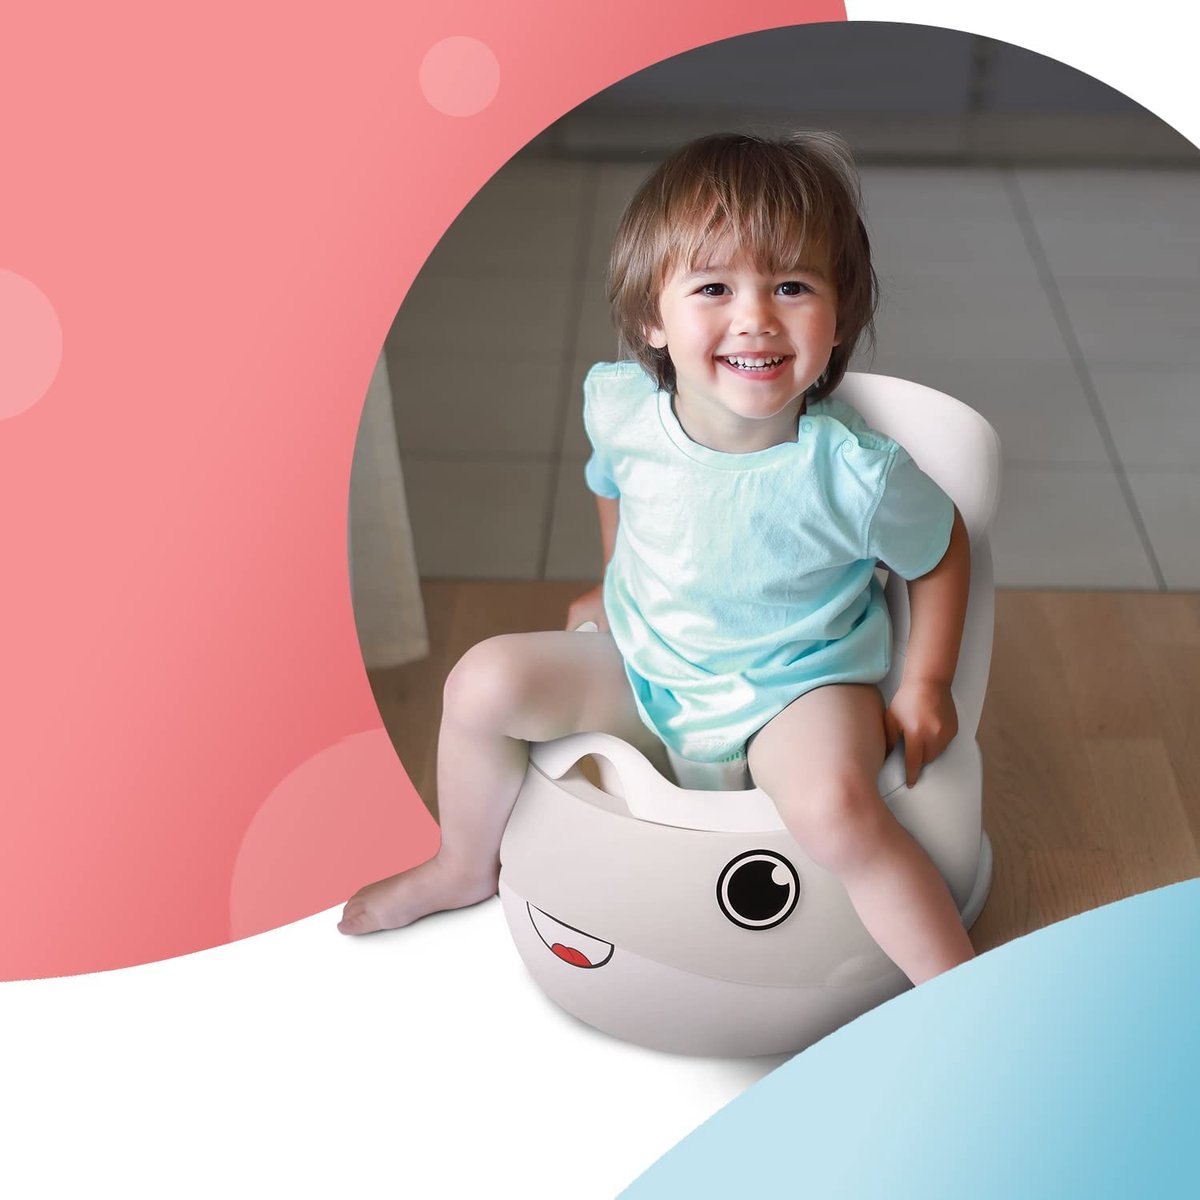 Baby Pékus - Le petit pot baleine 🐳 permet à votre enfant